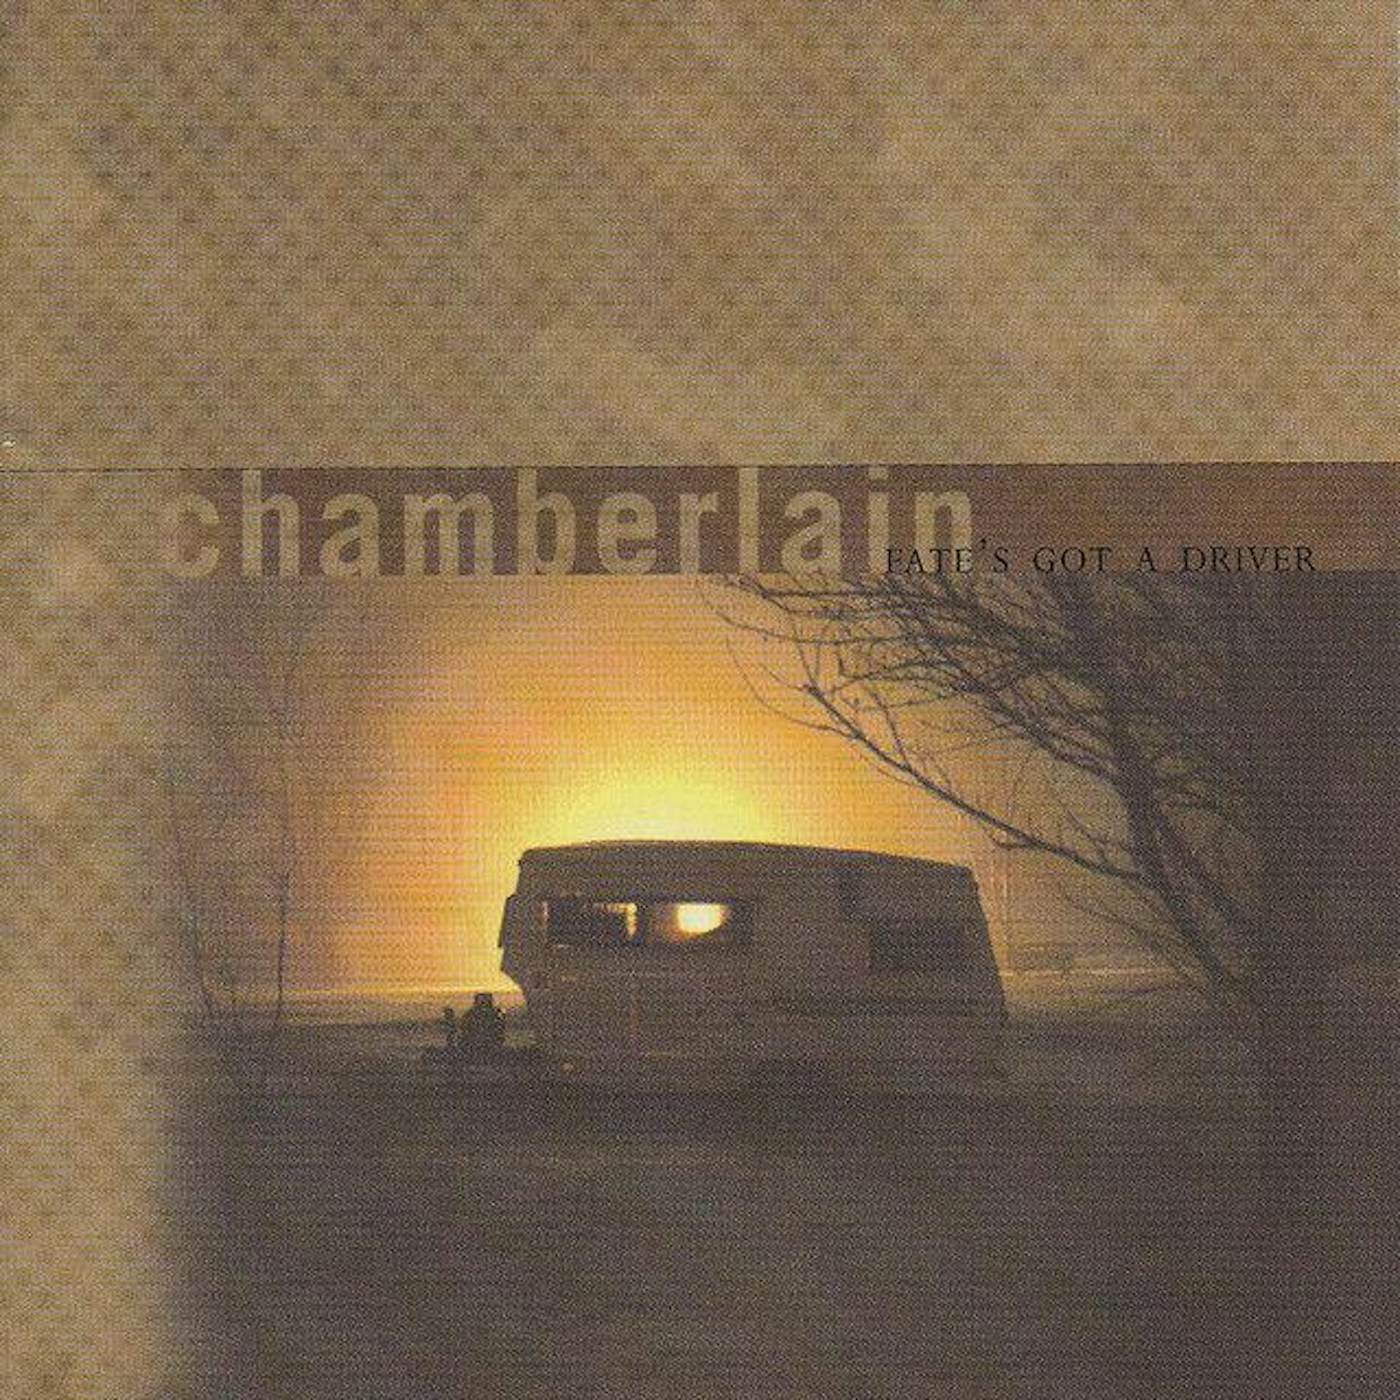 Chamberlain FATE'S GOT A DRIVER CD